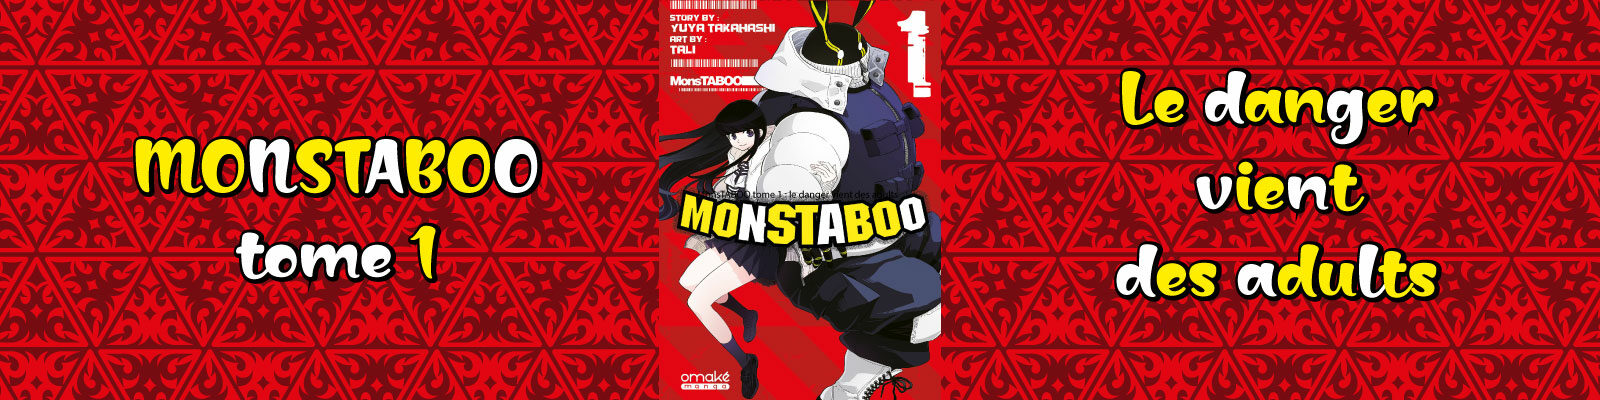 MonsTABOO-Vol.1-2